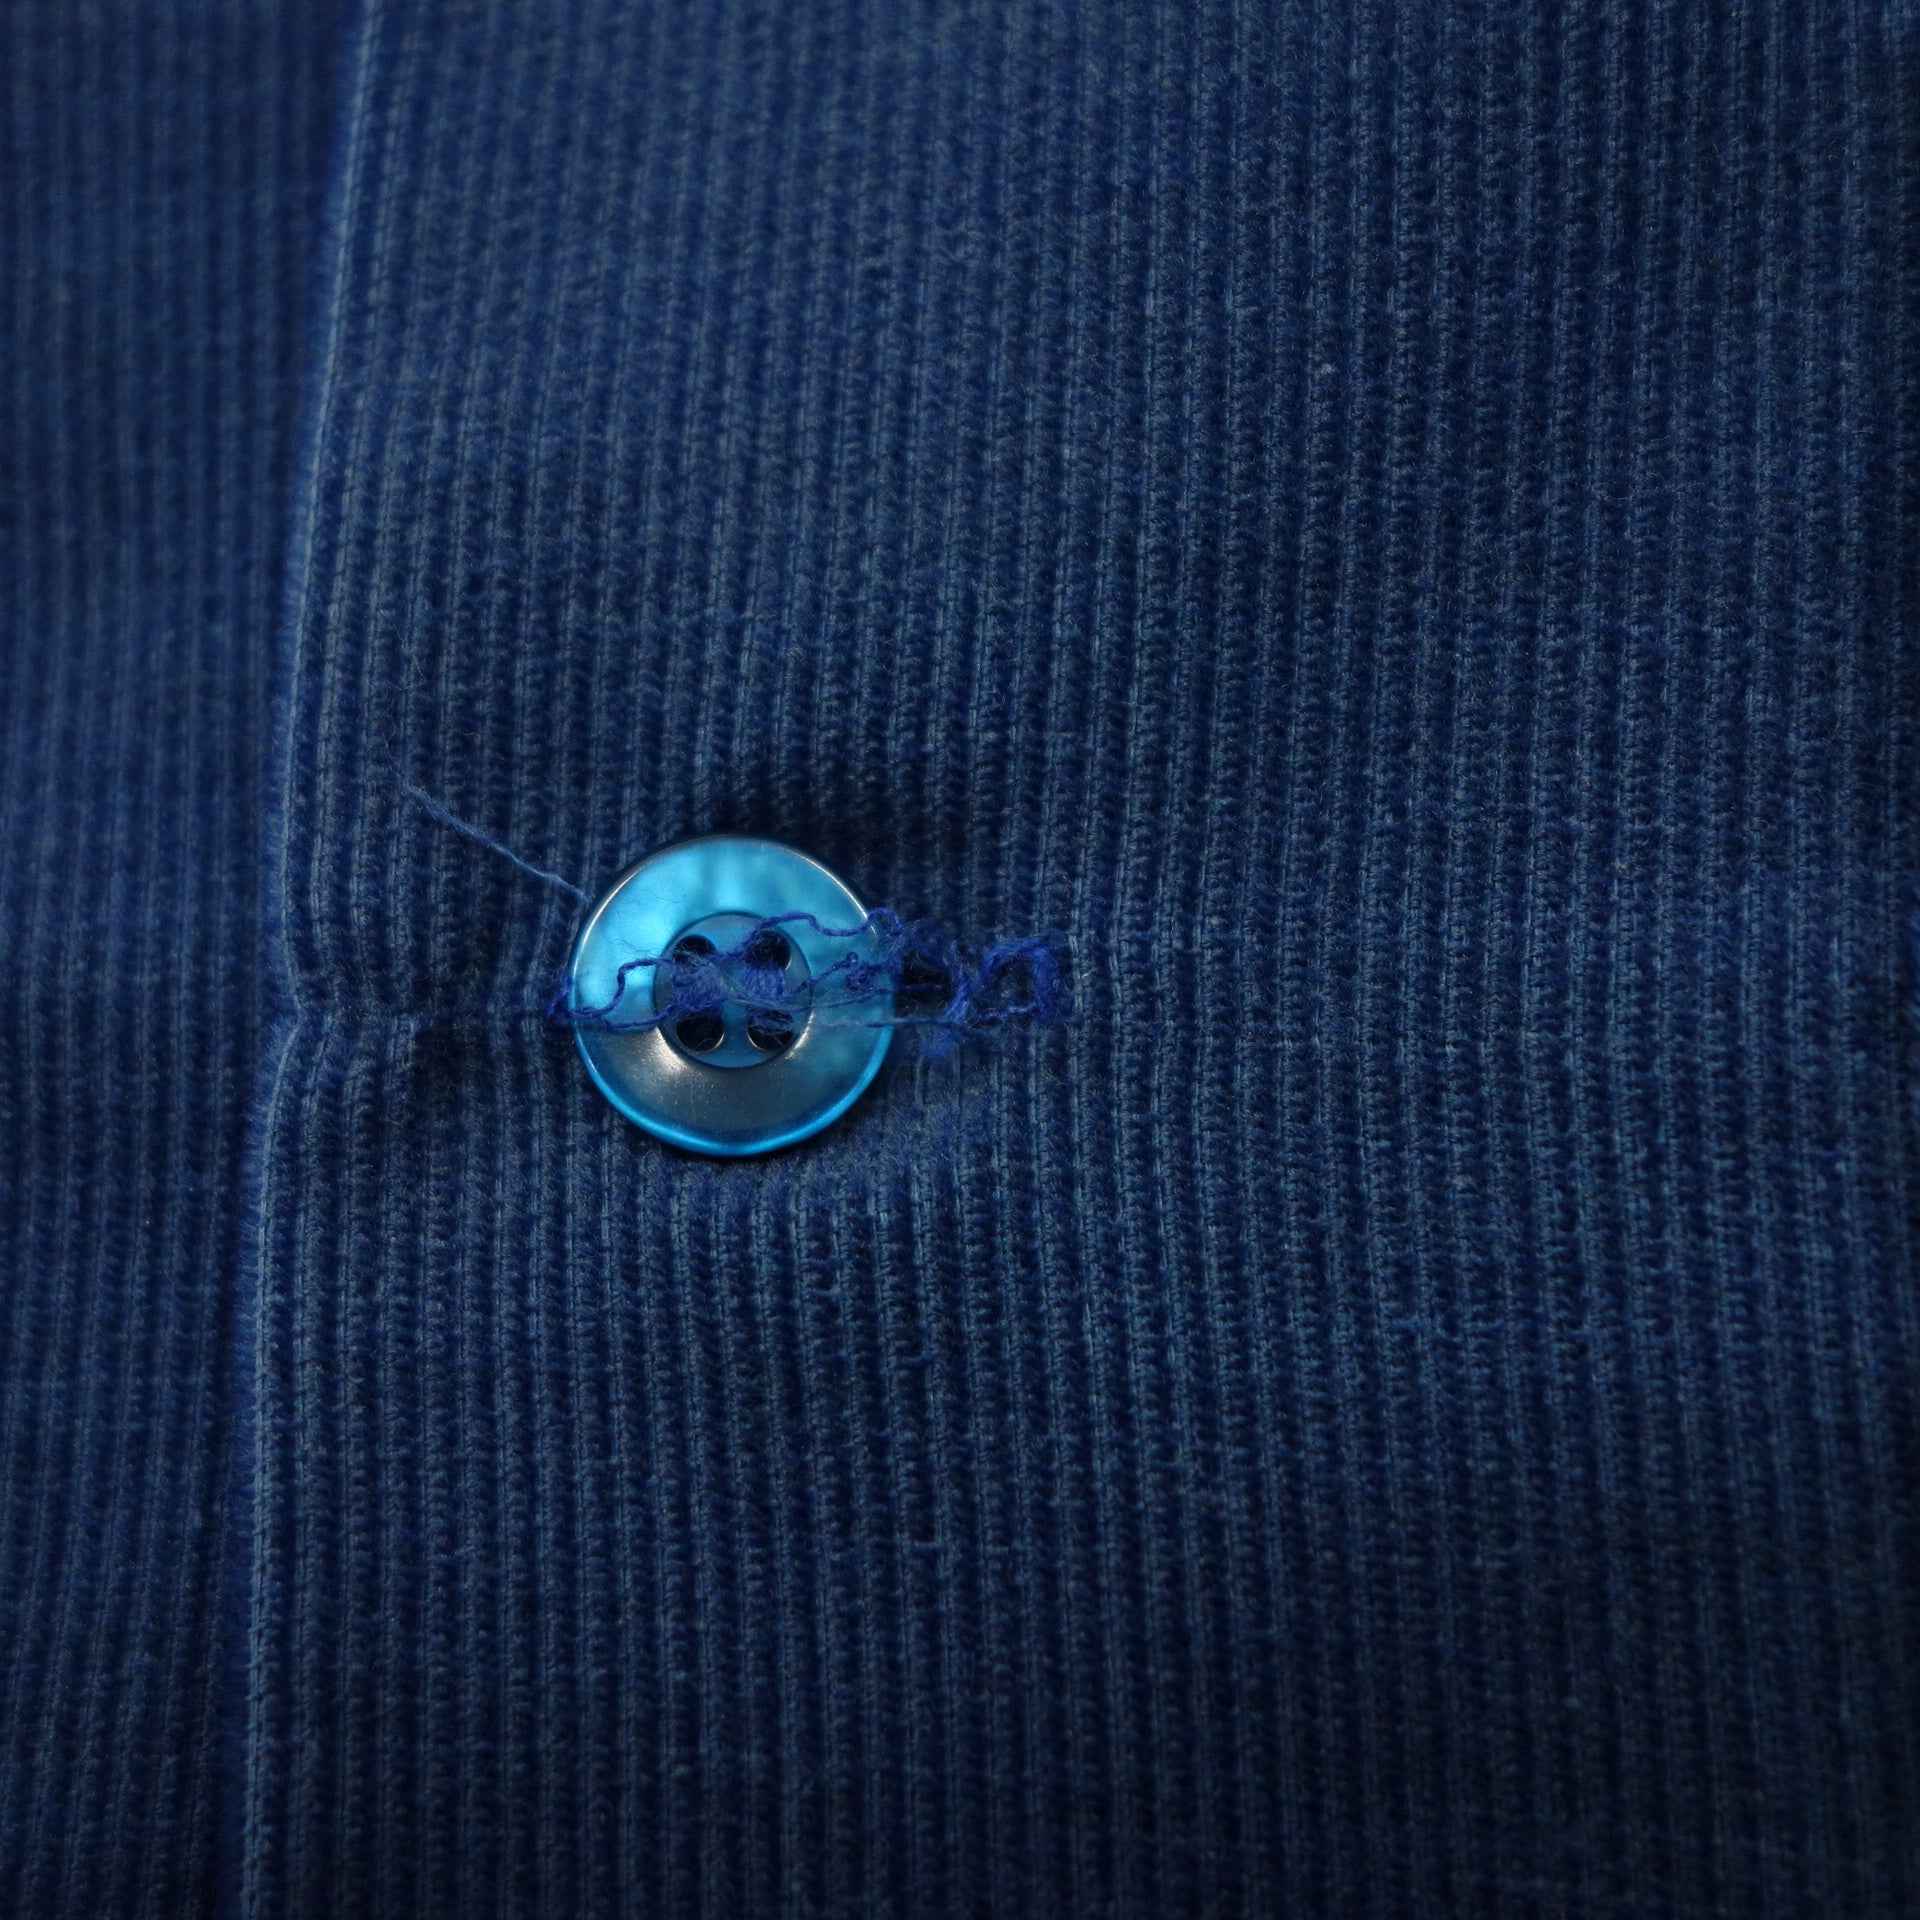 【Sears】シアーズ 1970‘s USA製 PERMA PREST コーデュロイ オープンカラーシャツ ブルー サイズM